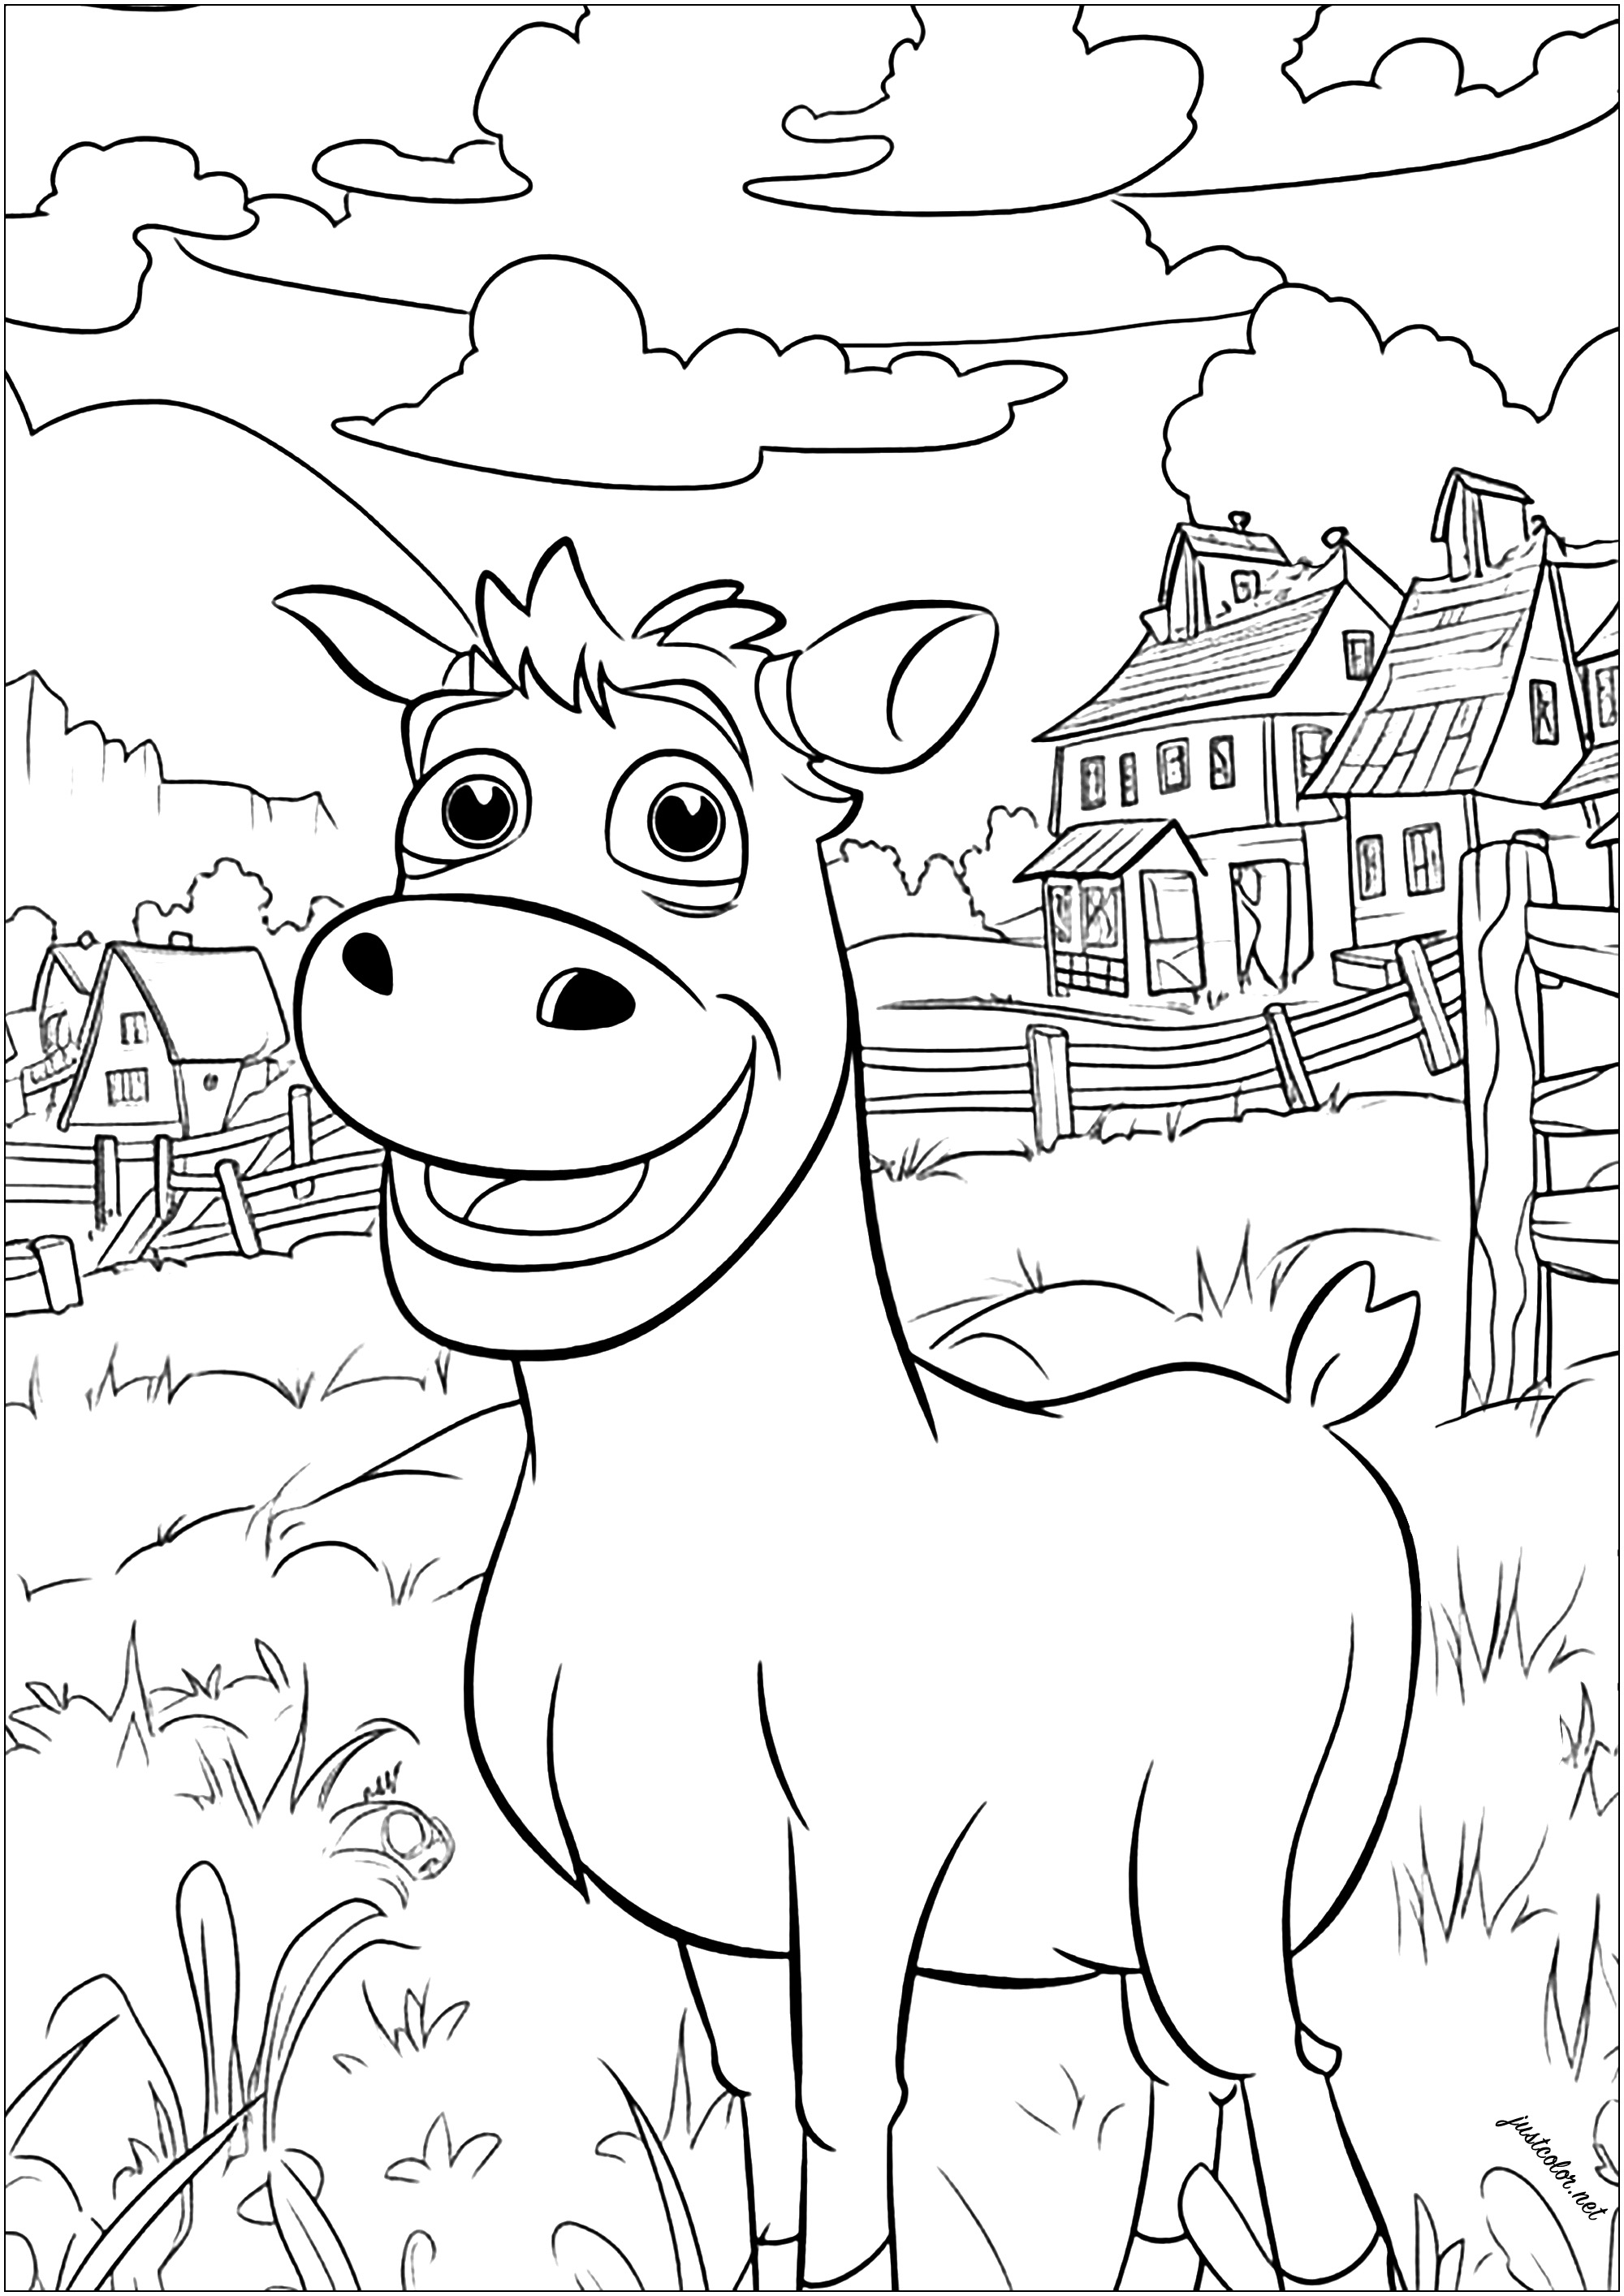 Una bella mucca da colorare. Questa simpatica mucca si trova nel suo campo con erba alta, con case e una fattoria tradizionale sullo sfondo.